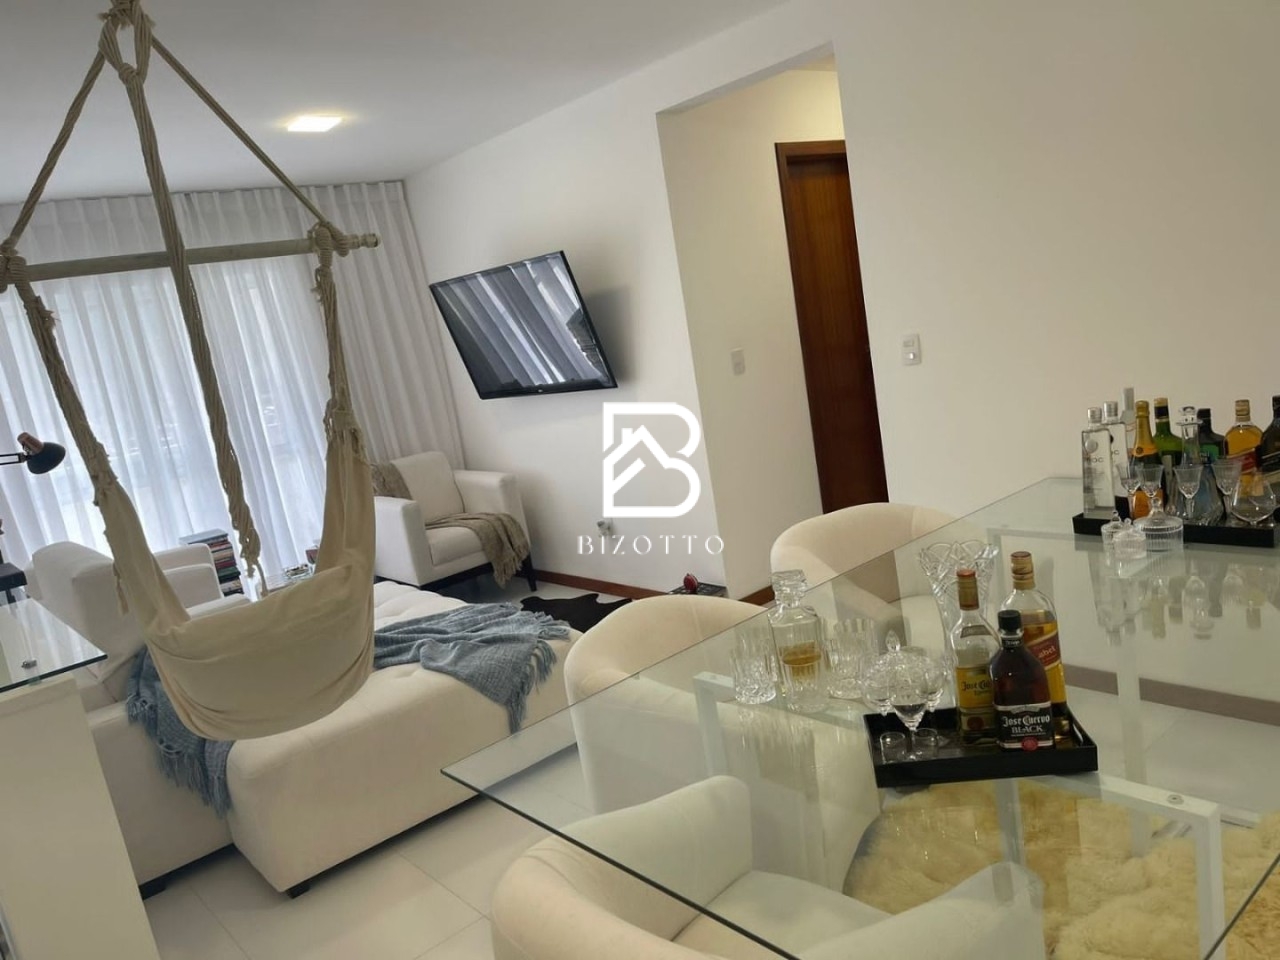 Apartamento em Rio Caveiras, Biguaçu/SC de 7286m² 2 quartos à venda por R$ 477.000,00